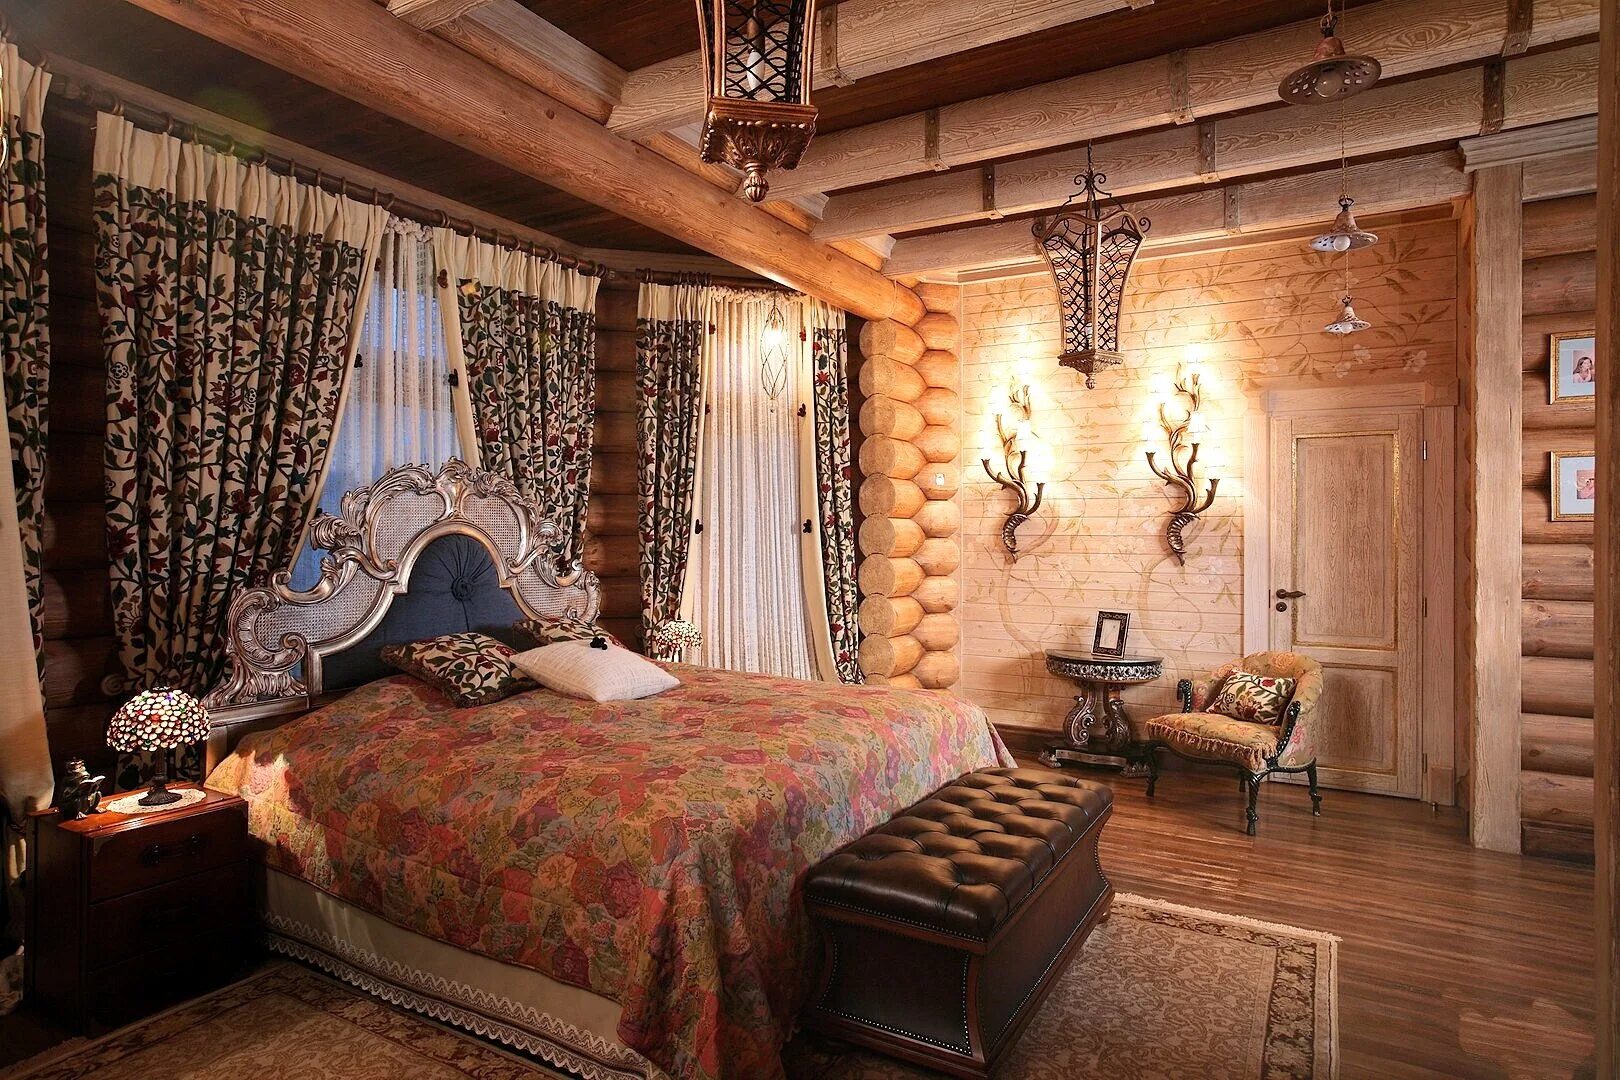 Дизайн комнат в деревянном доме. Интерьер бревенчатого дома Берендеево царство. Терем Неорусский стиль интерьер. Интерьер а-ля рюс.